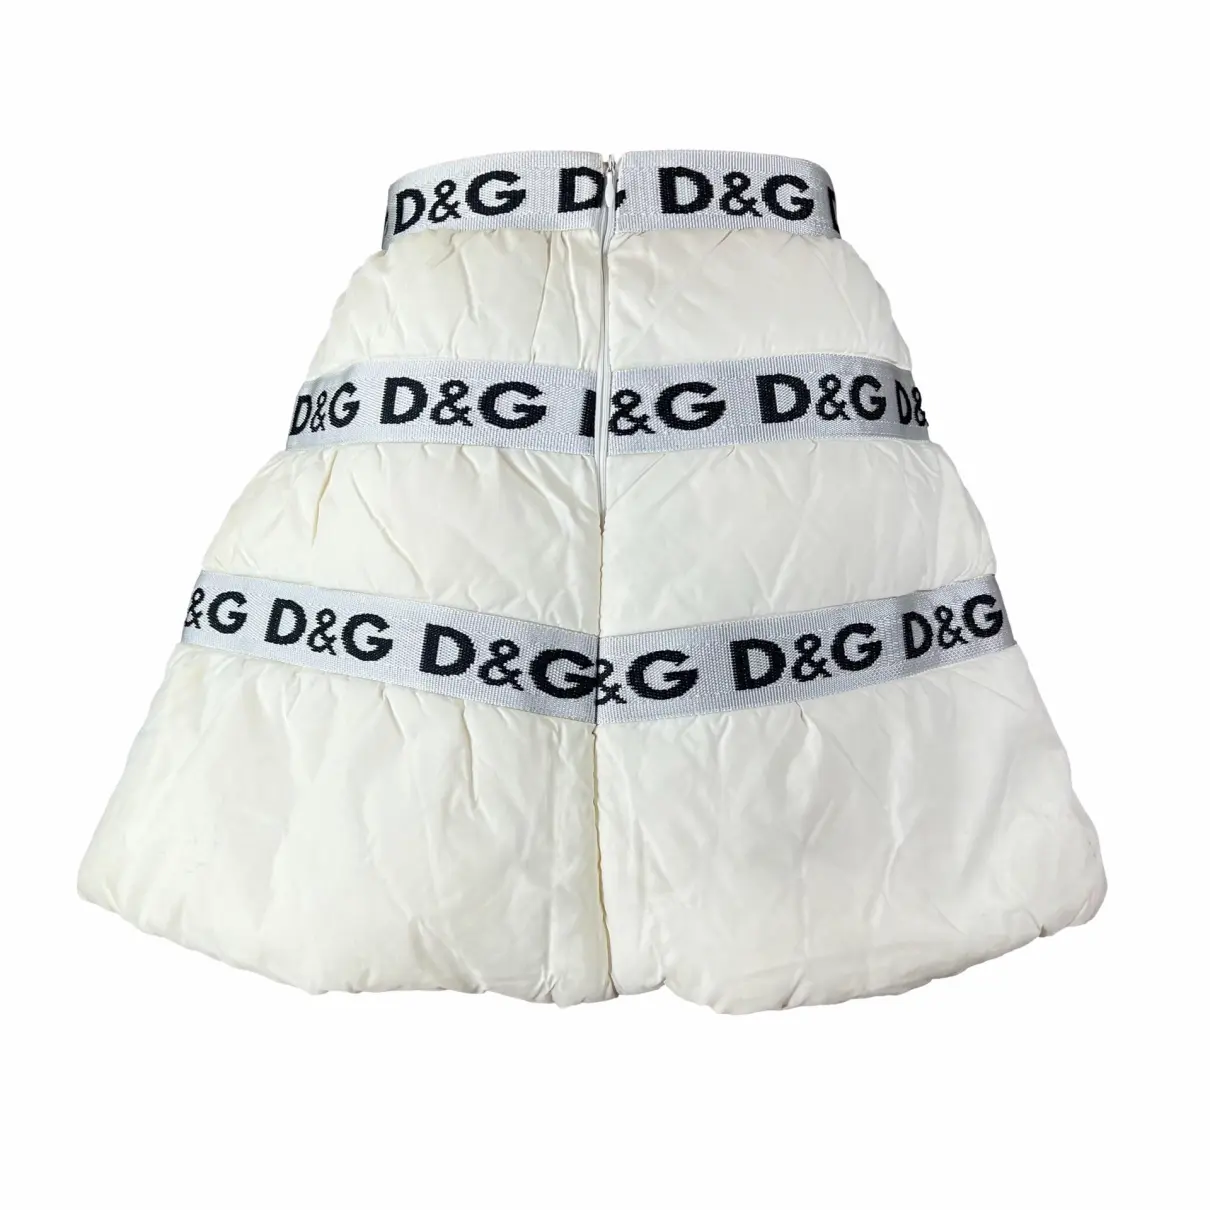 Buy D&G Mini skirt online - Vintage